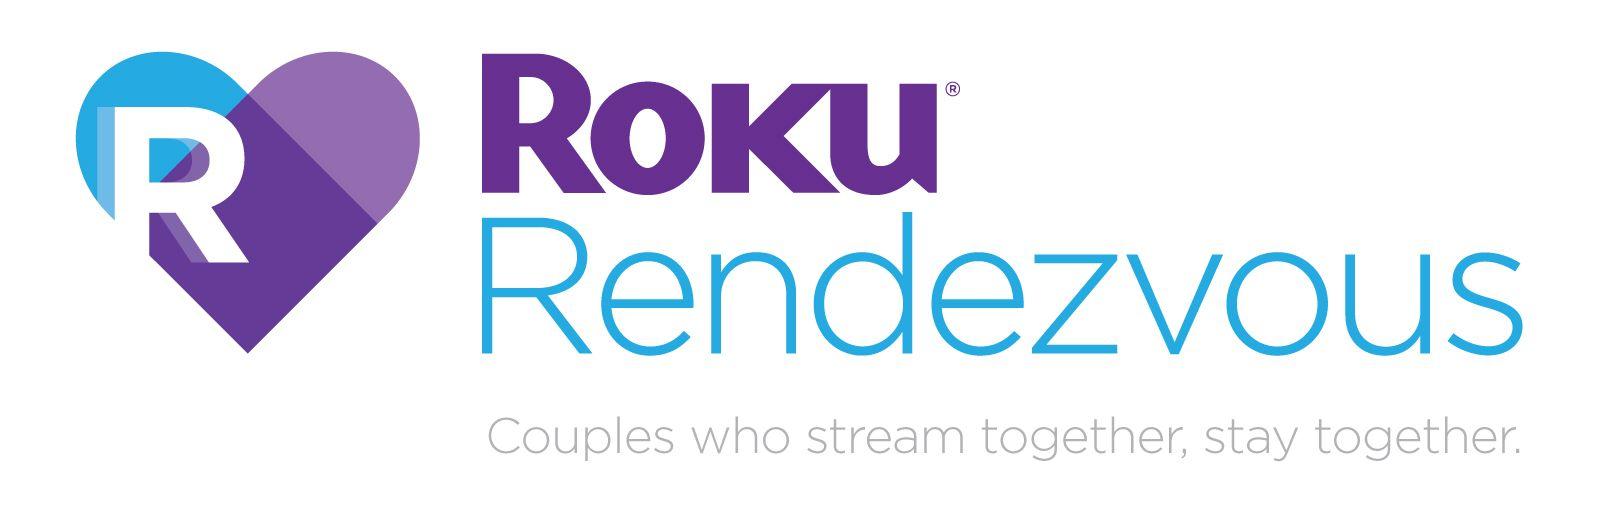 Roku.com Logo - Introducing Roku Rendezvous™